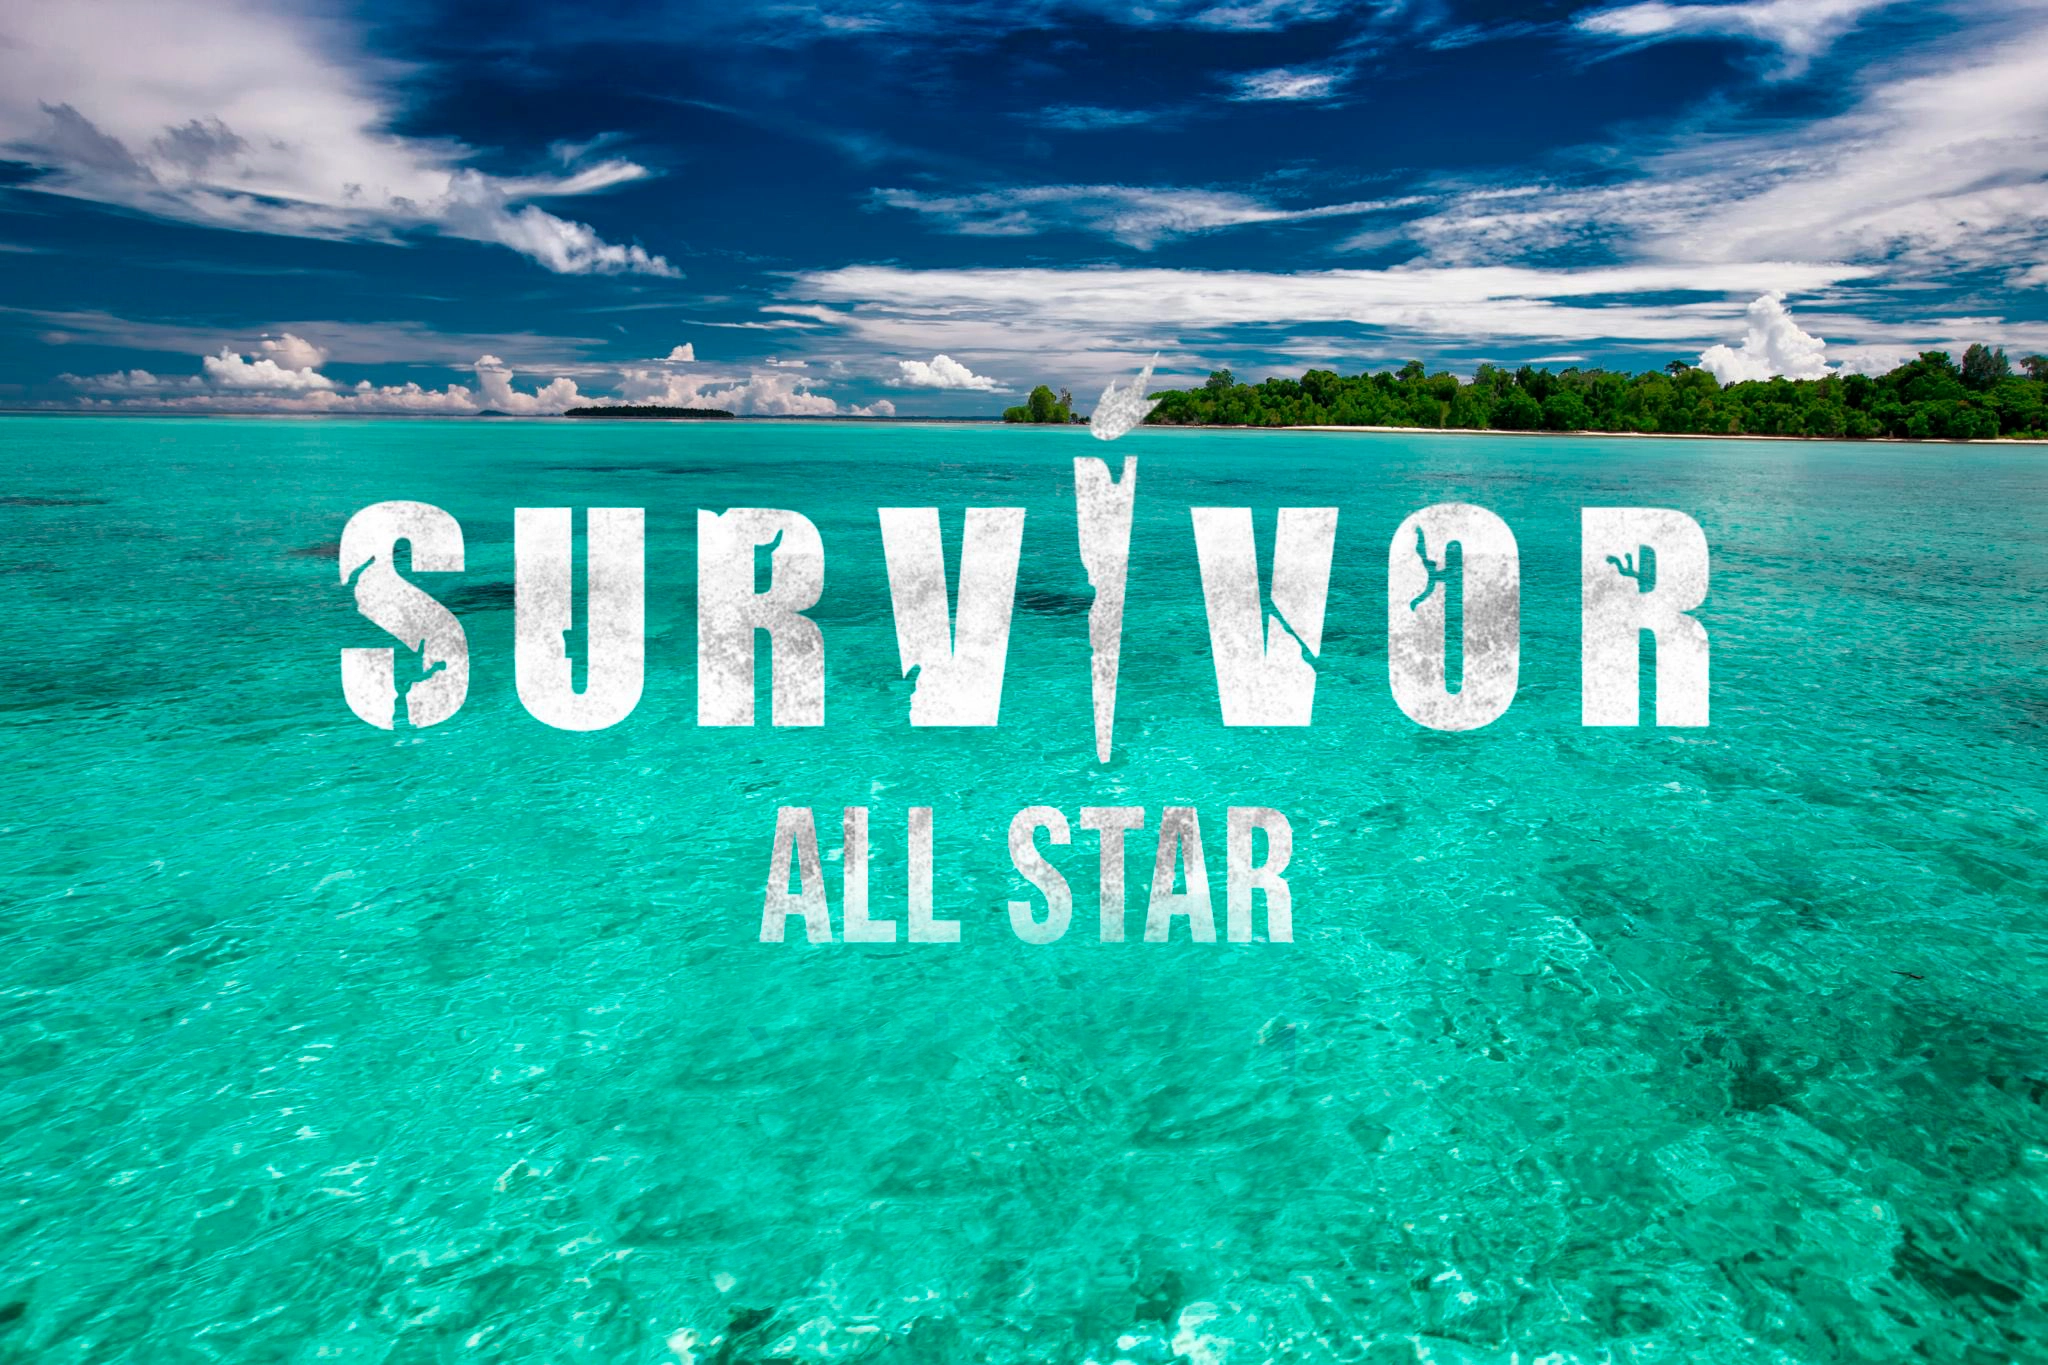 Survivor dokunulmazlık oyununu kim kazandı? 12 Şubat Survivor All Star'da dokunulmazlık oyununu kazanan hangi takım oldu?